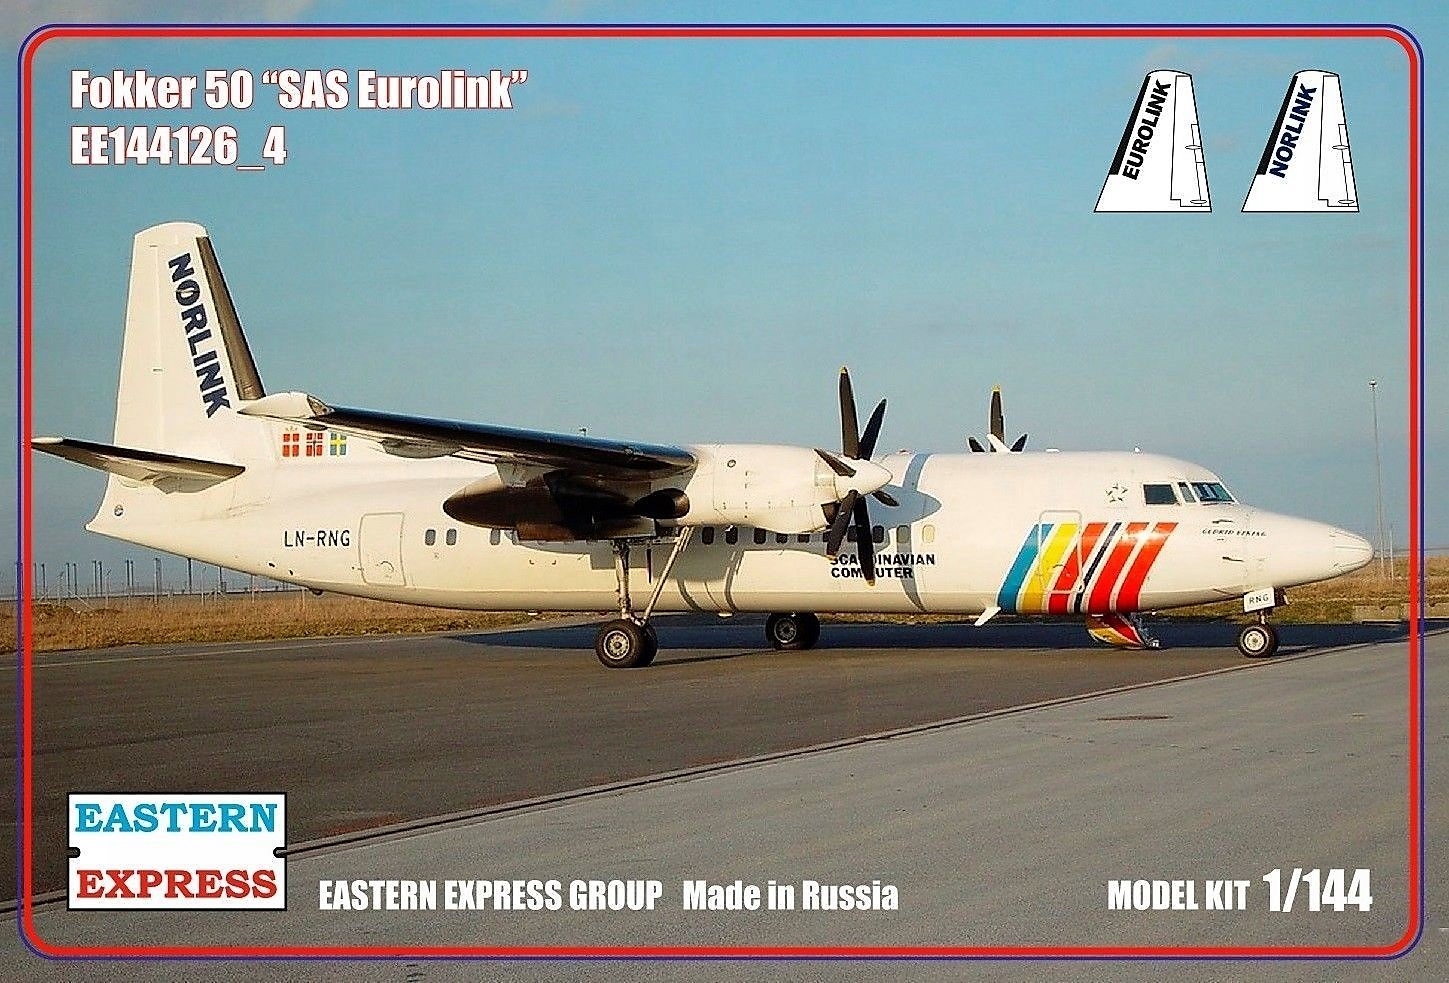 144126_4  авиация  Fokker 50 "SAS Eurolink" (1:144)